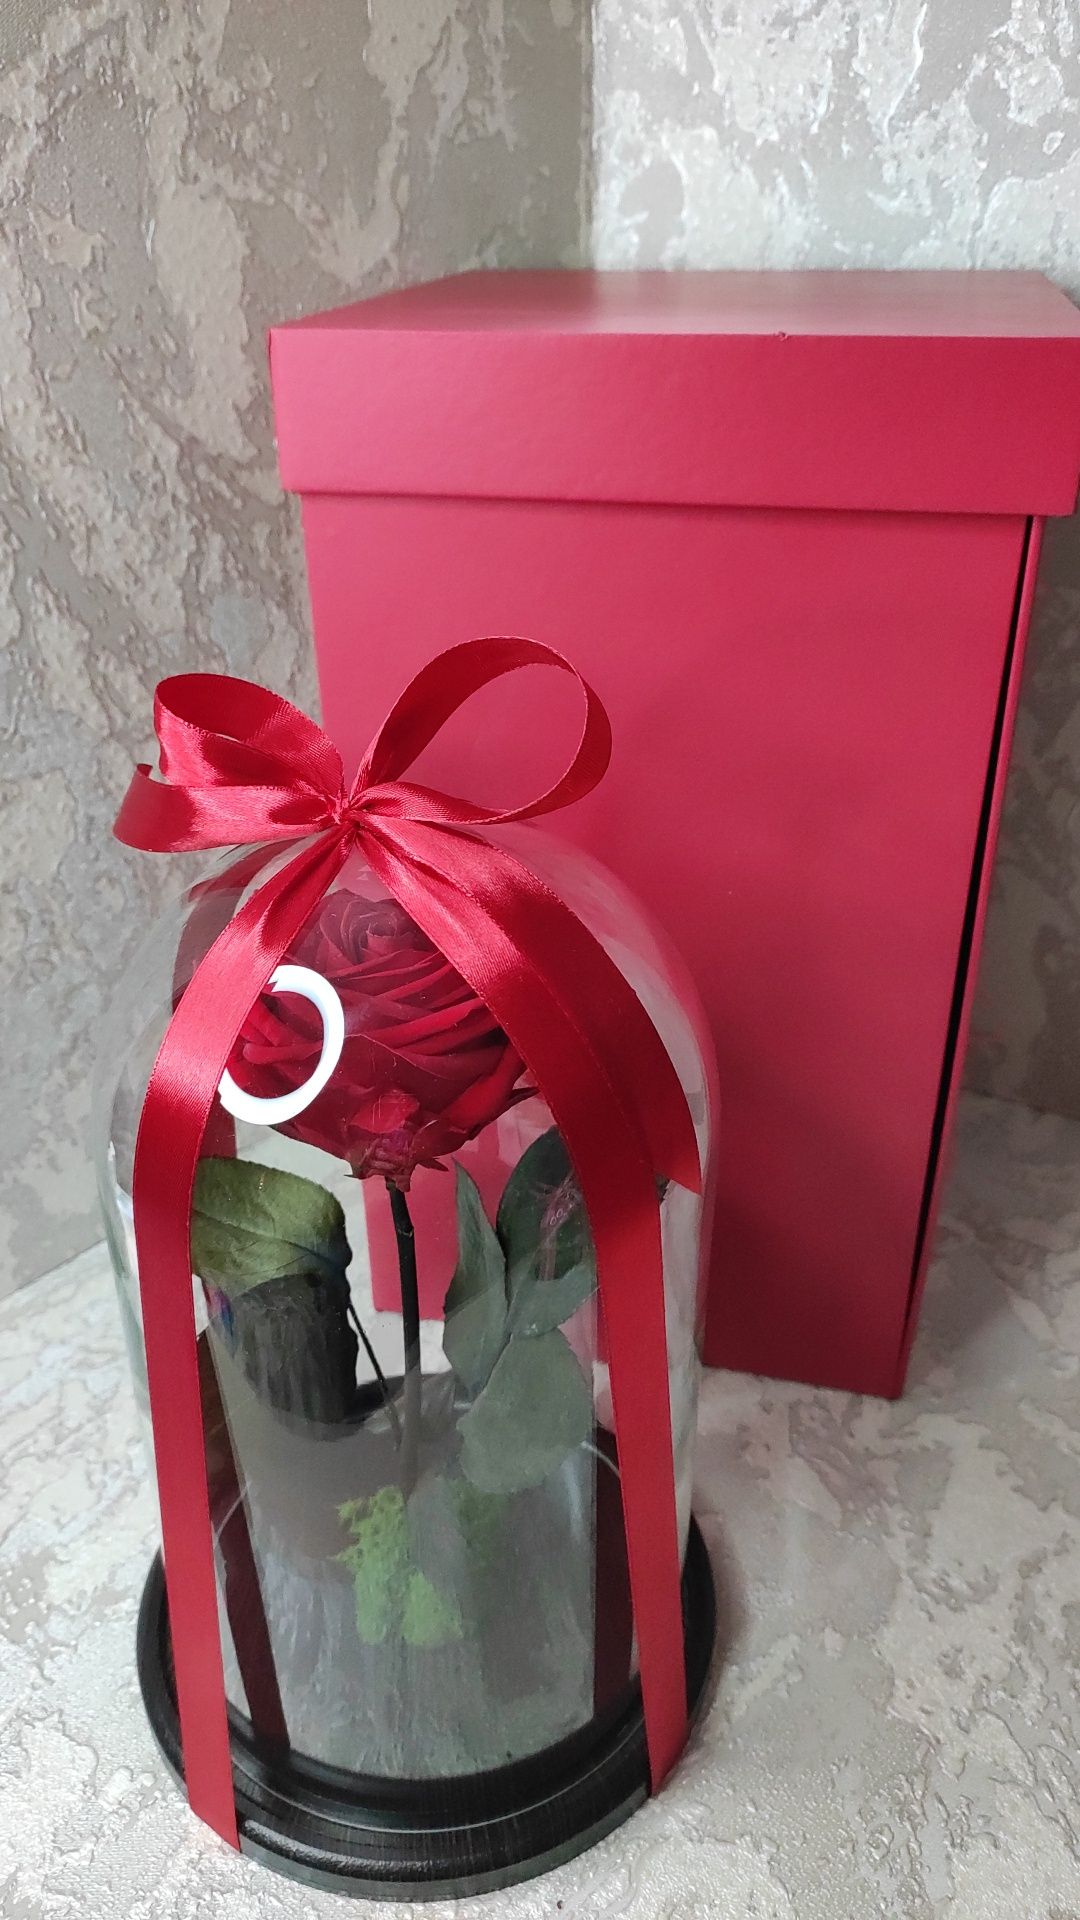 Волшебный Подарок на День рождения.Новый год! Лучшие розы в Алматы. Ро